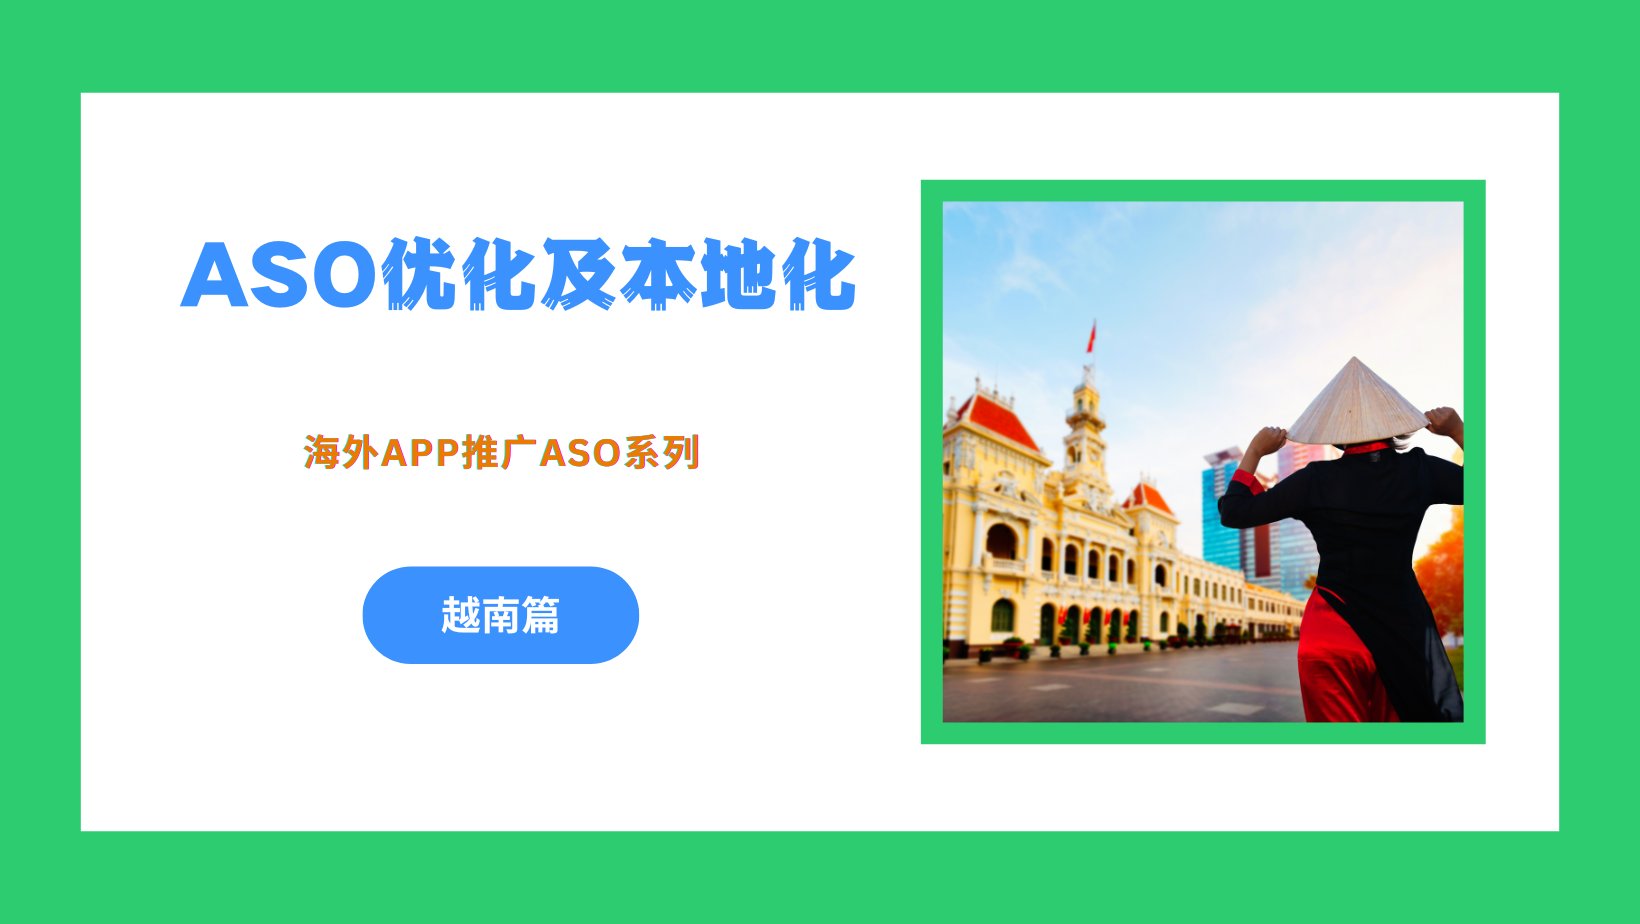 海外App推广之ASO优化及本地化 – 越南篇